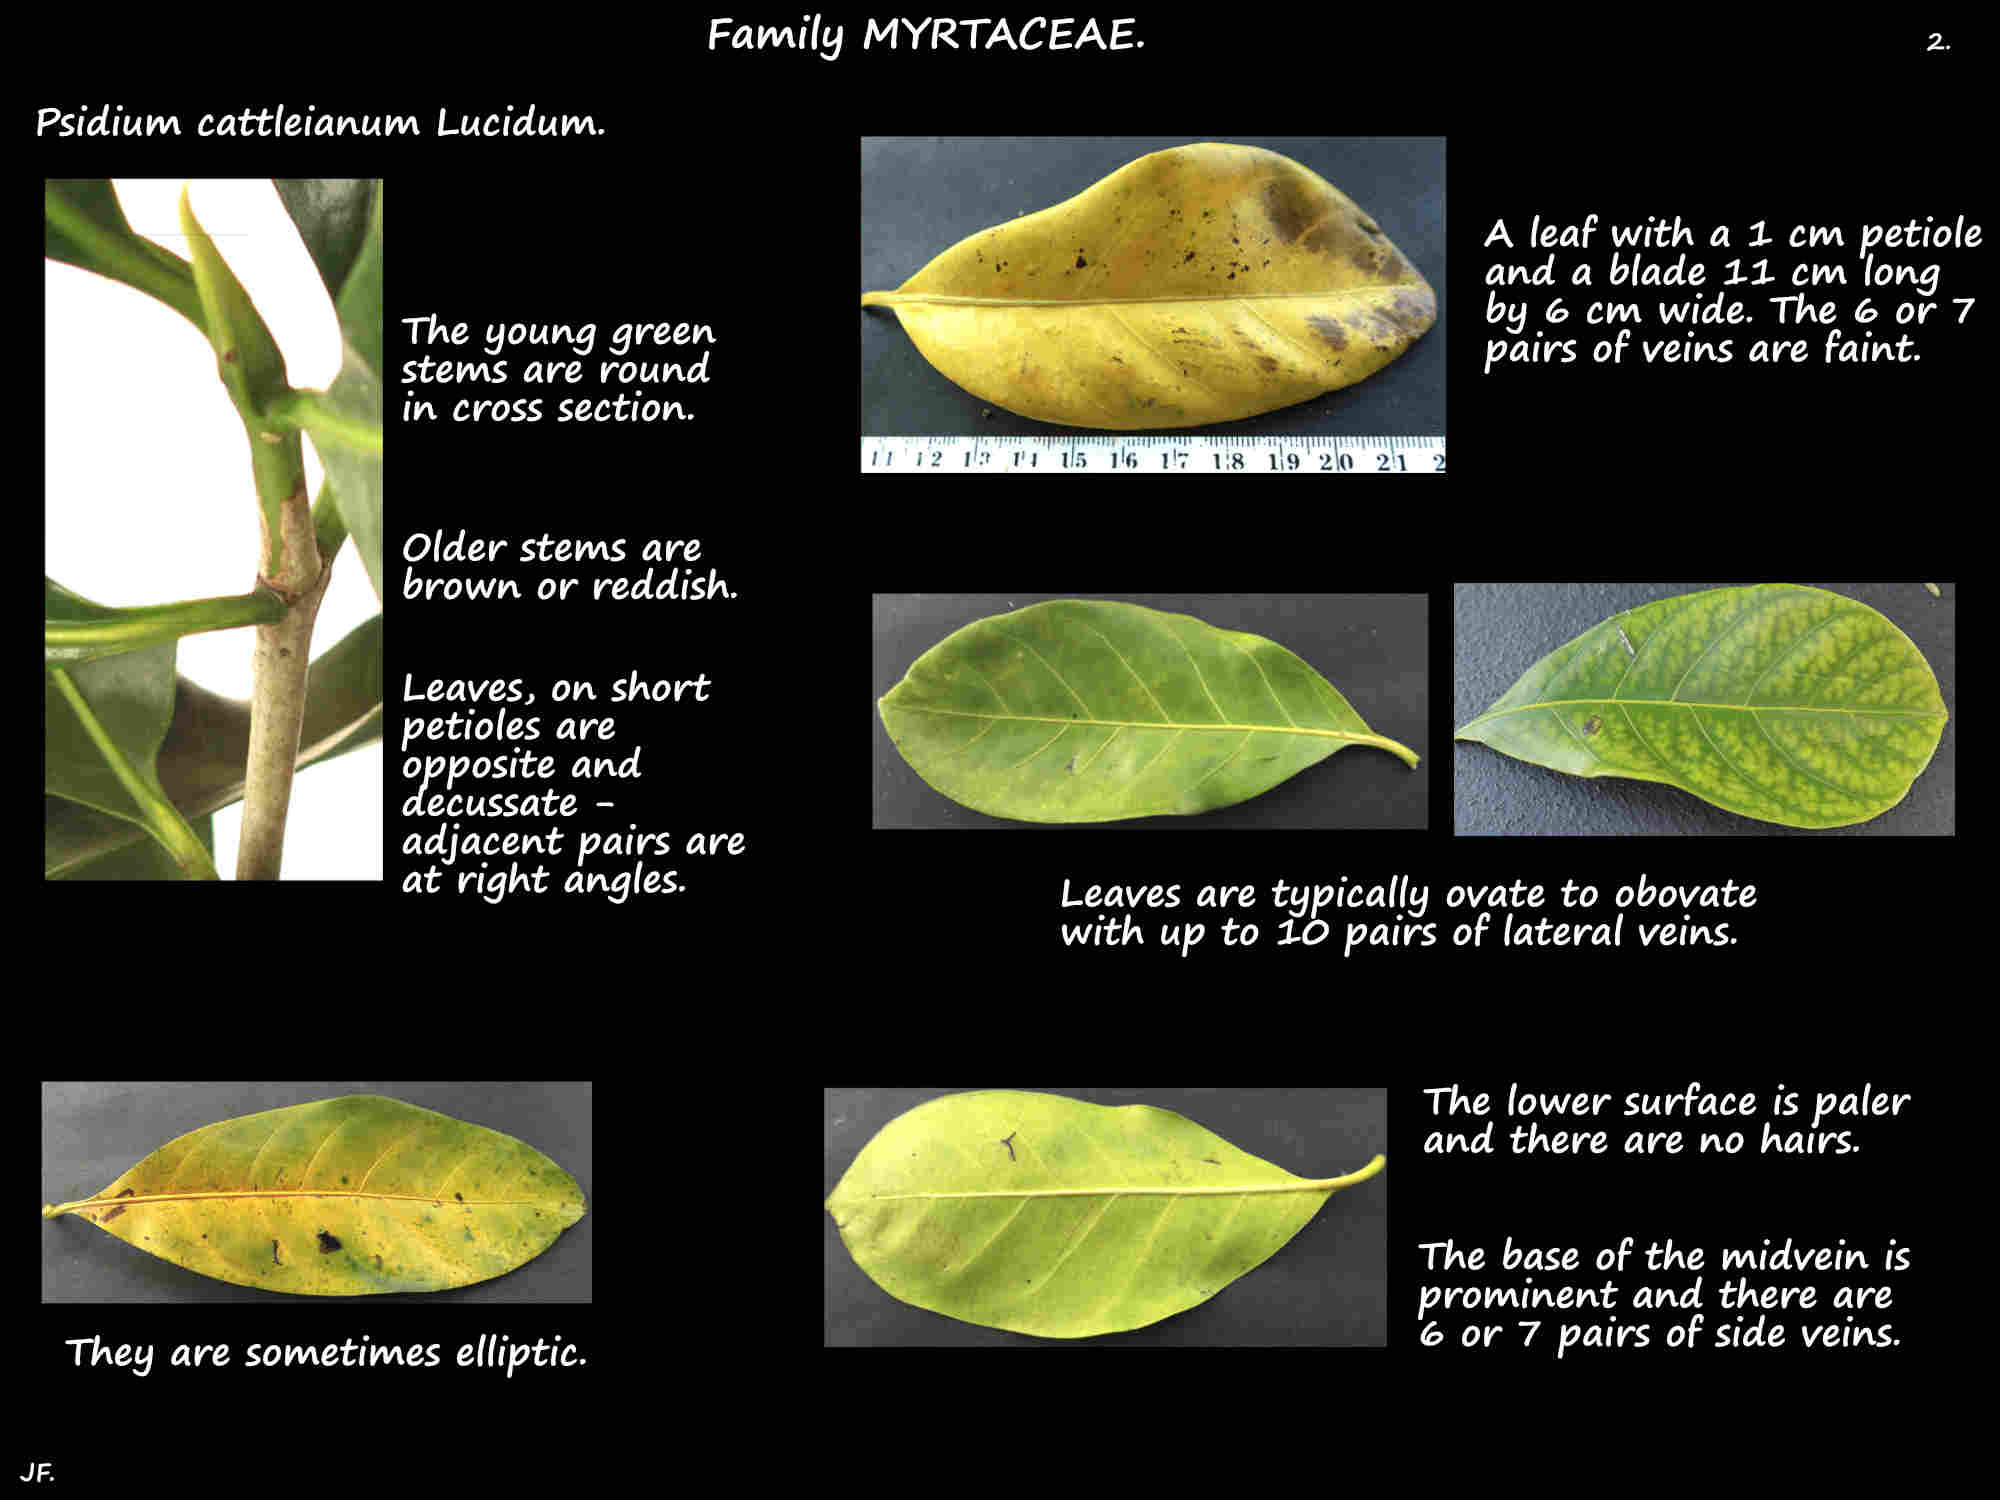 2 Psidium cattleianum Lucidum leaves